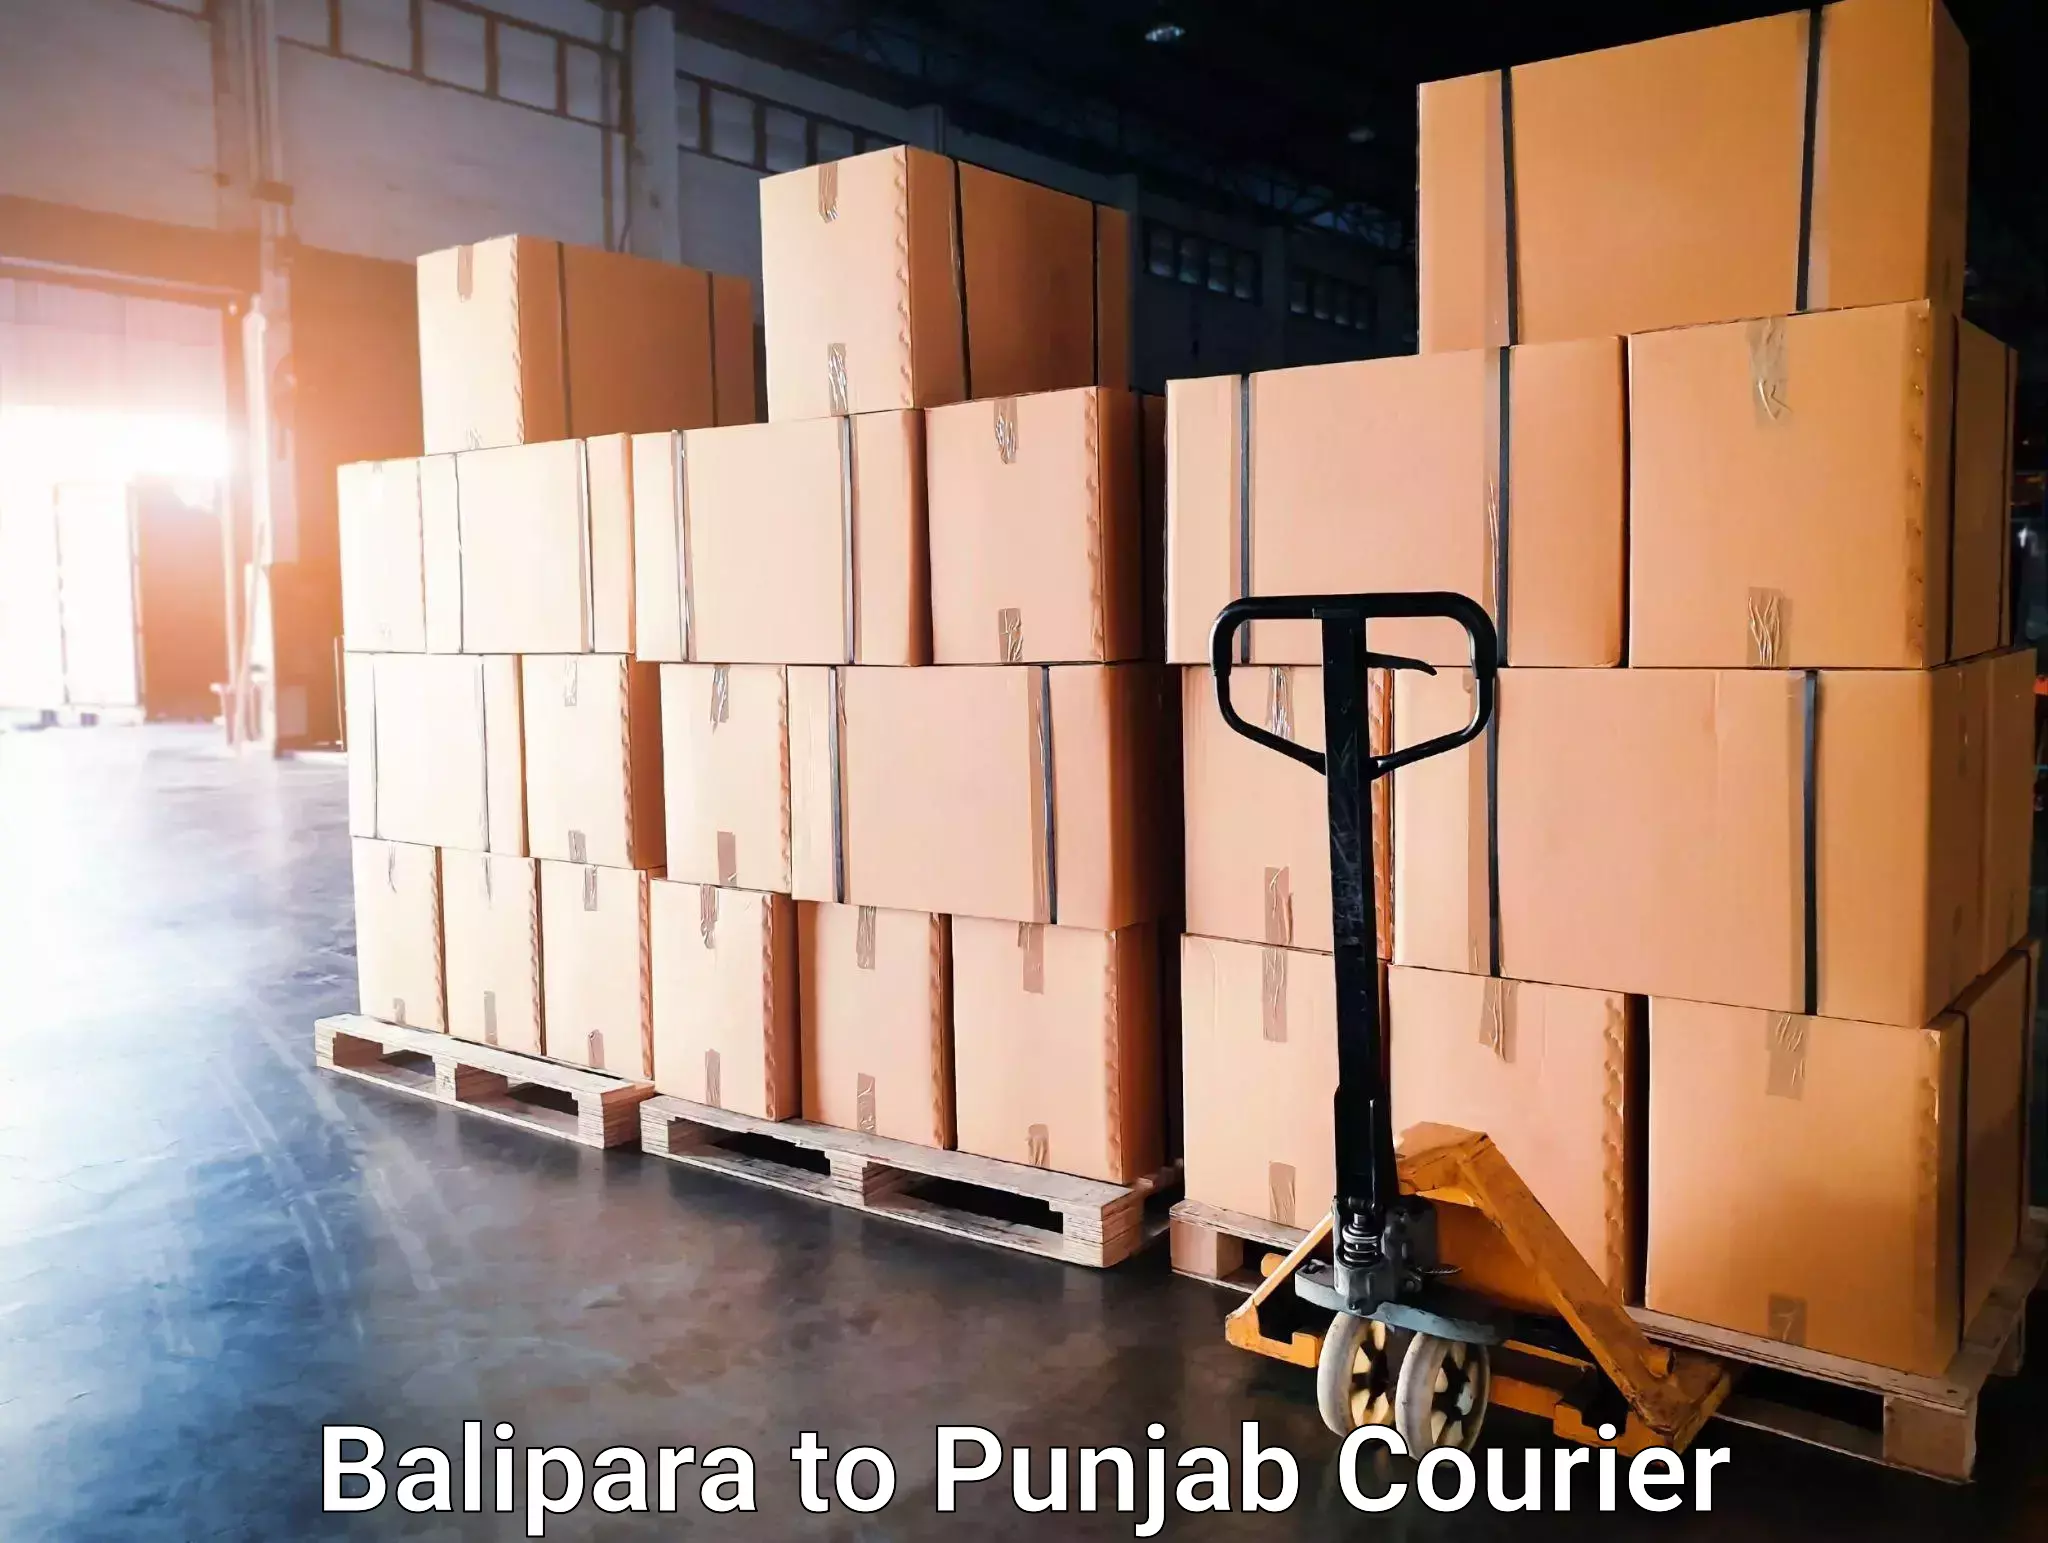 Urgent courier needs Balipara to Kotkapura